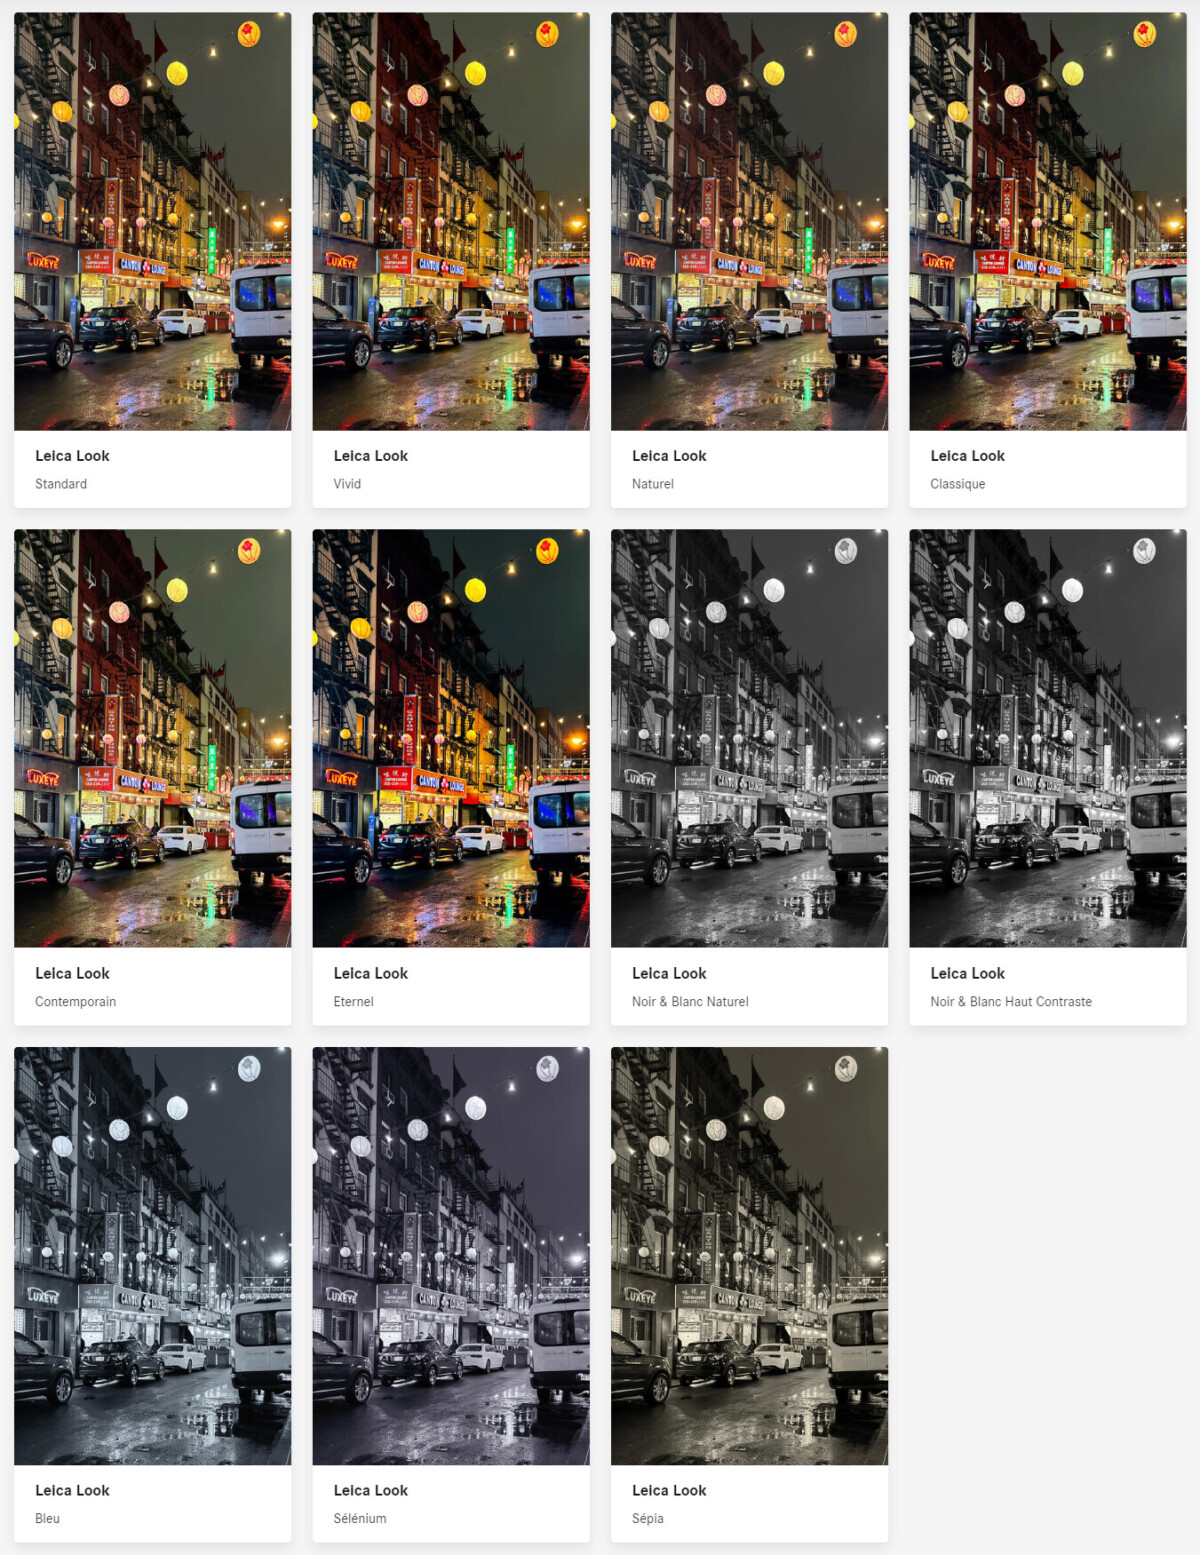 Les looks de l'application Leica Lux sur iPhone